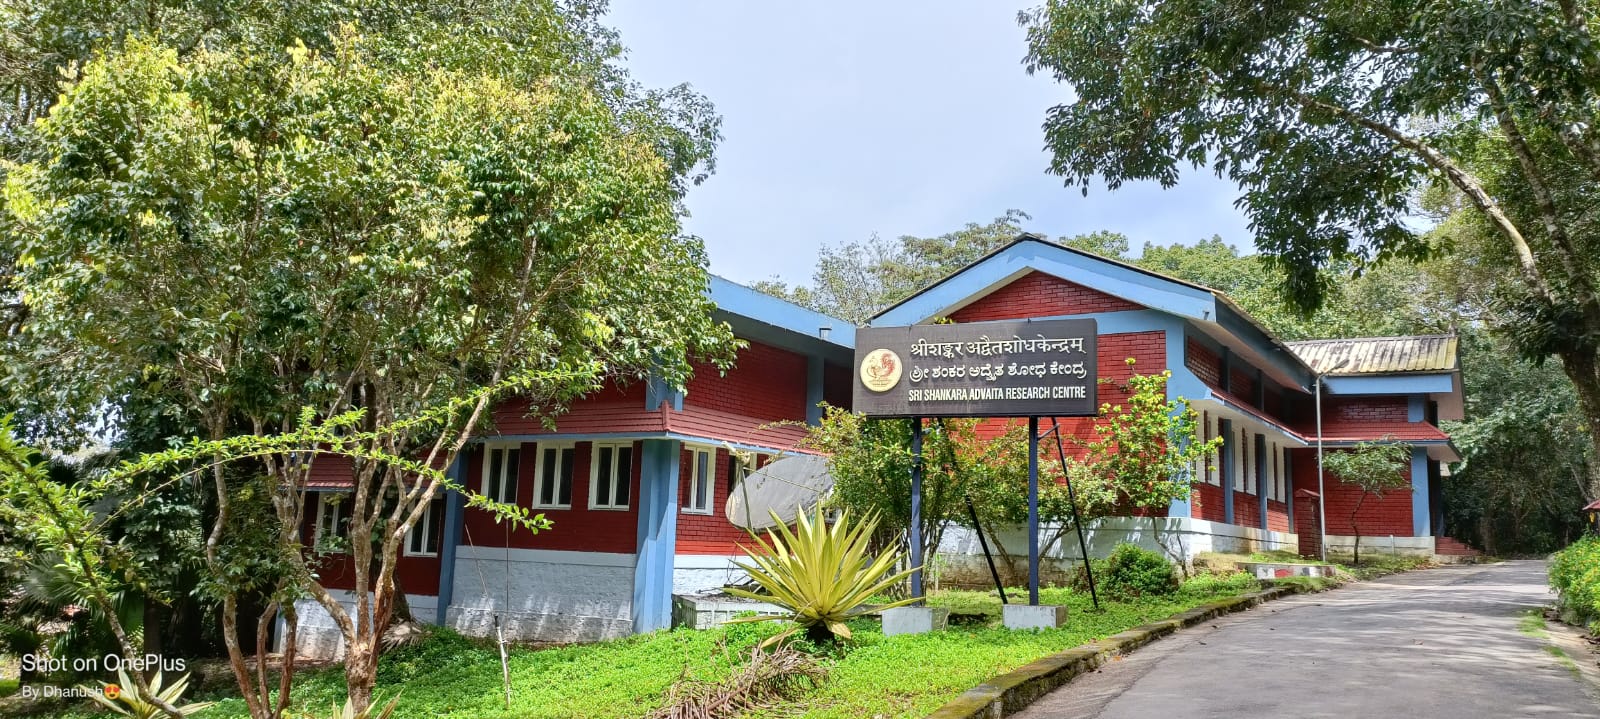 Advaita Research Centre